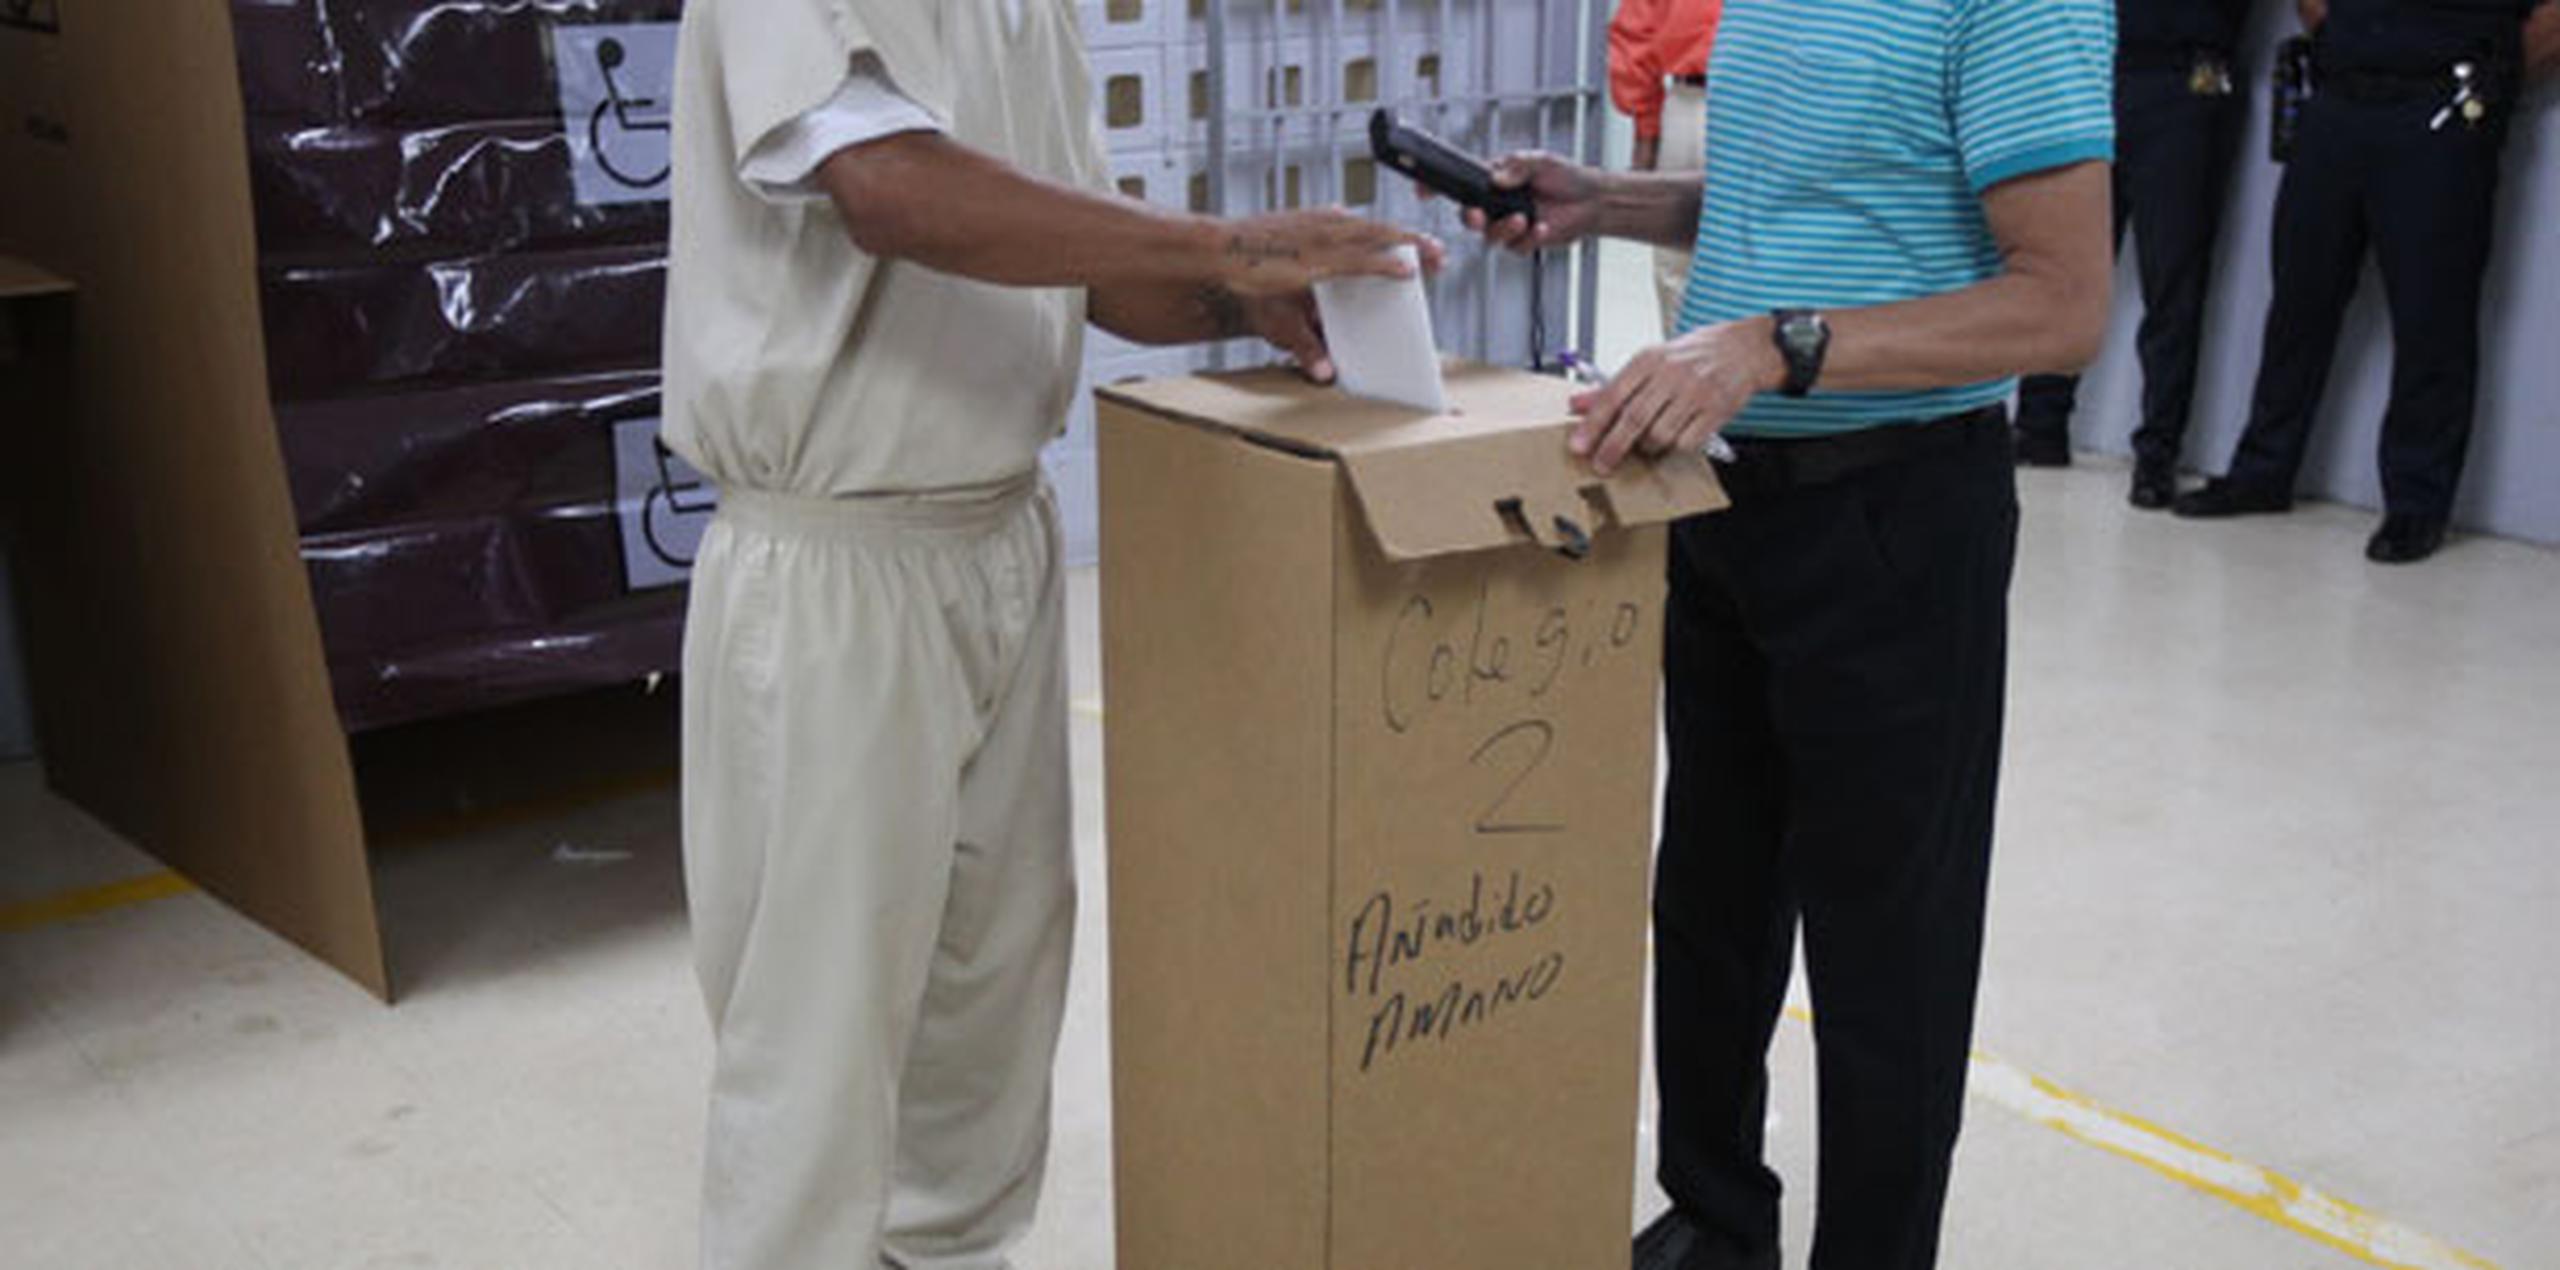 Sea para una votación estatal o federal, Rodríguez considera que para los confinados es "saludable" formar parte de los procesos electorales. (alex.figueroa@gfrmedia.com)
